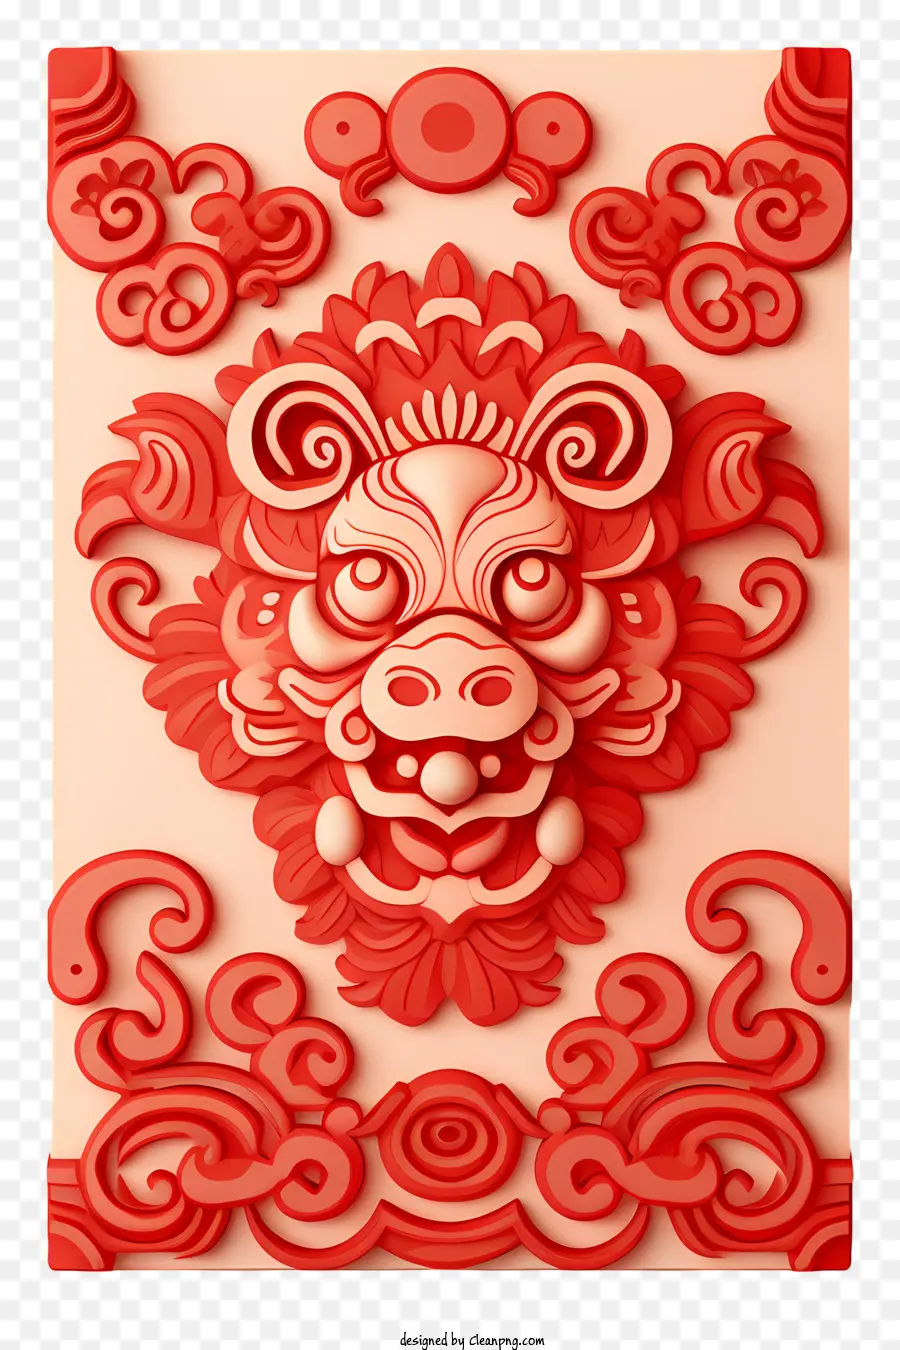 Chinesisches Neujahr - Roter chinesischer Drache mit heftigem Ausdruck und Blumenhintergrund